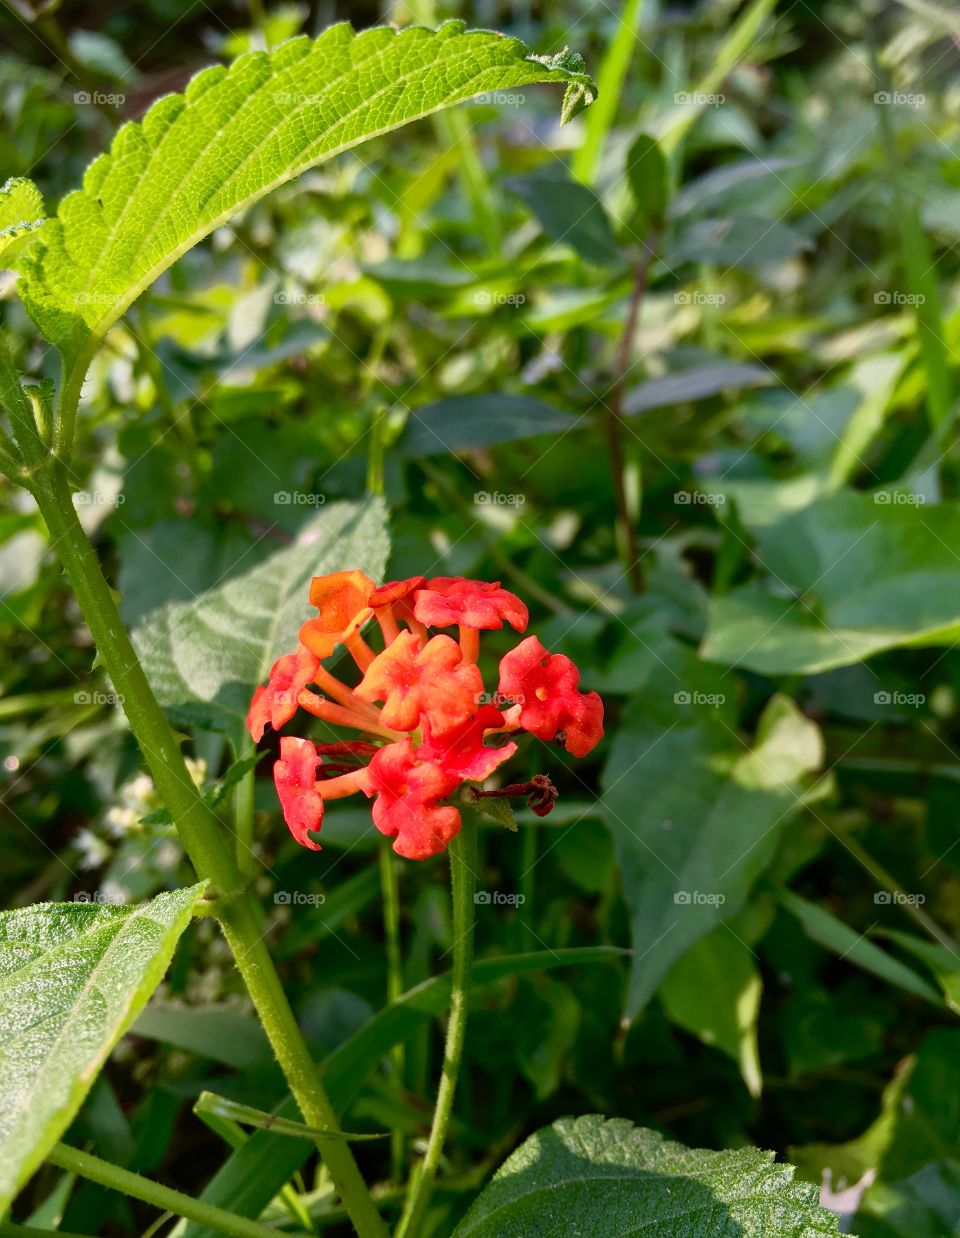 Wild flower 